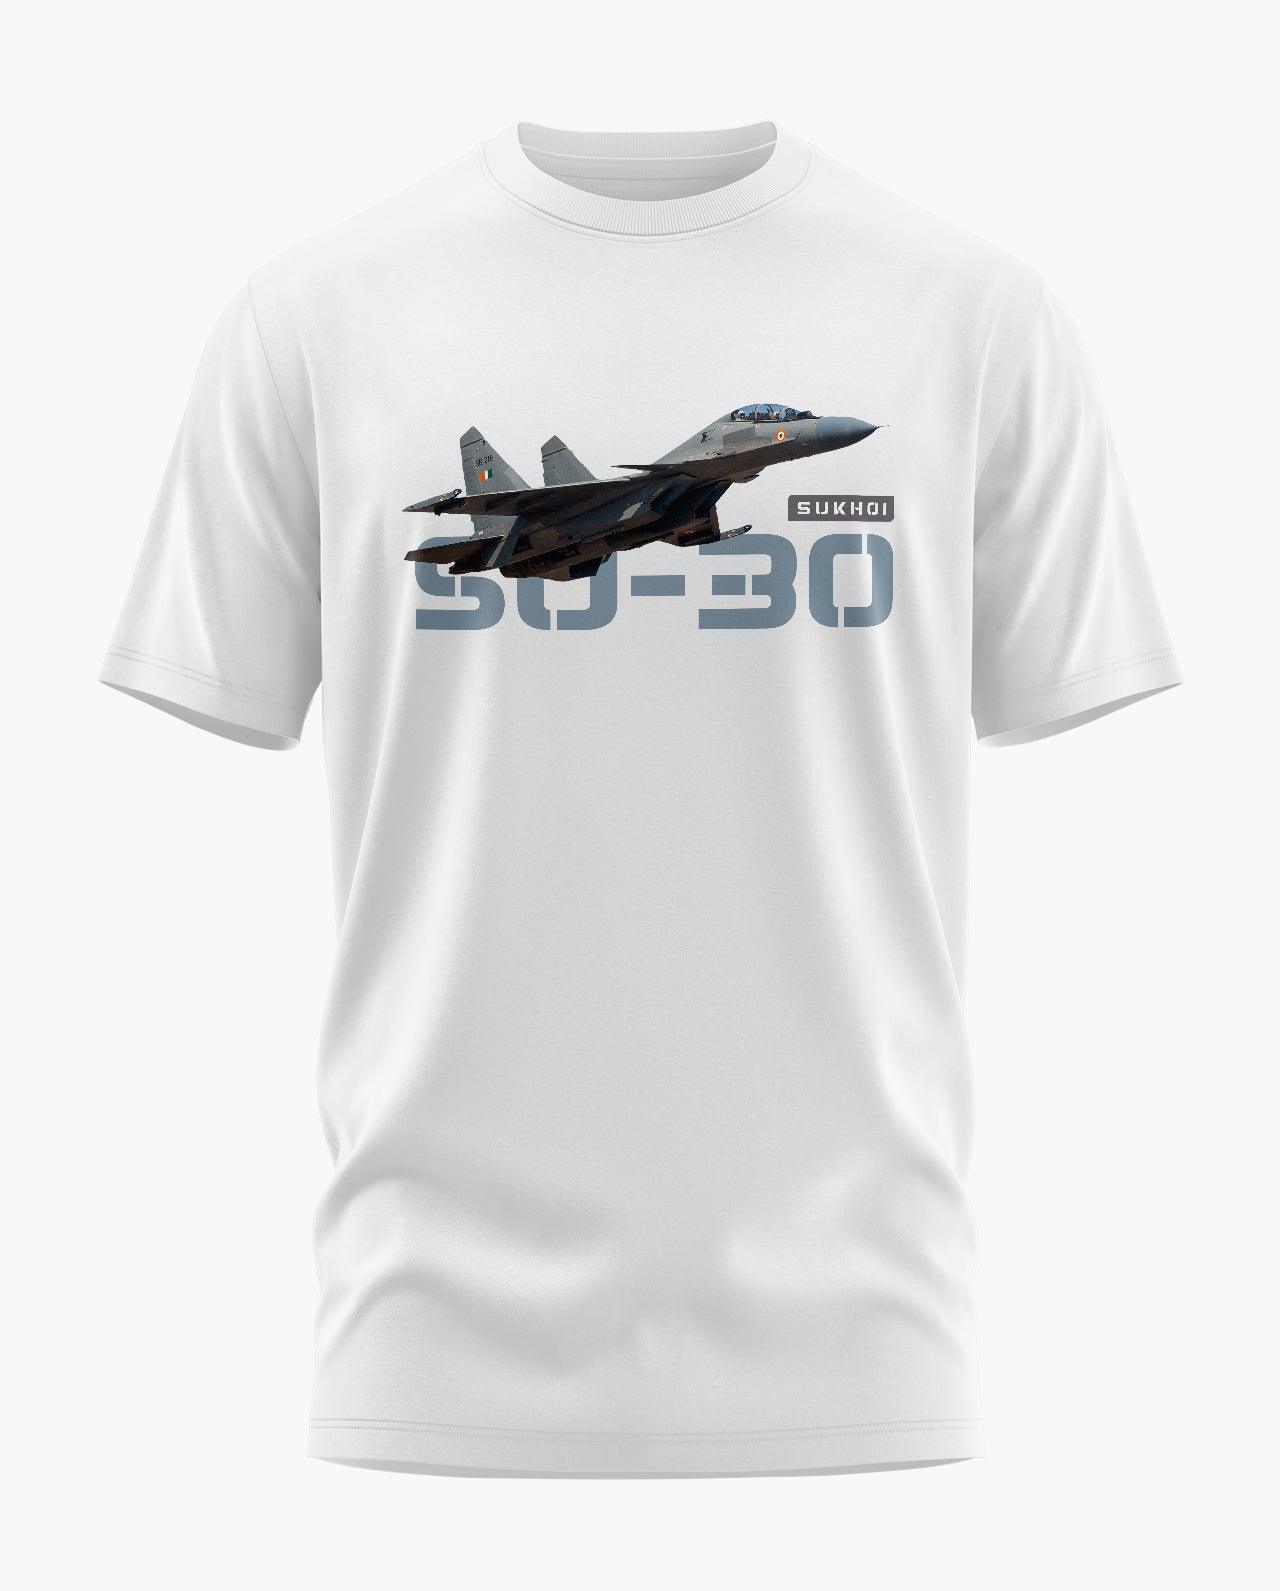 Sukhoi Su-30 T-Shirt - Aero Armour